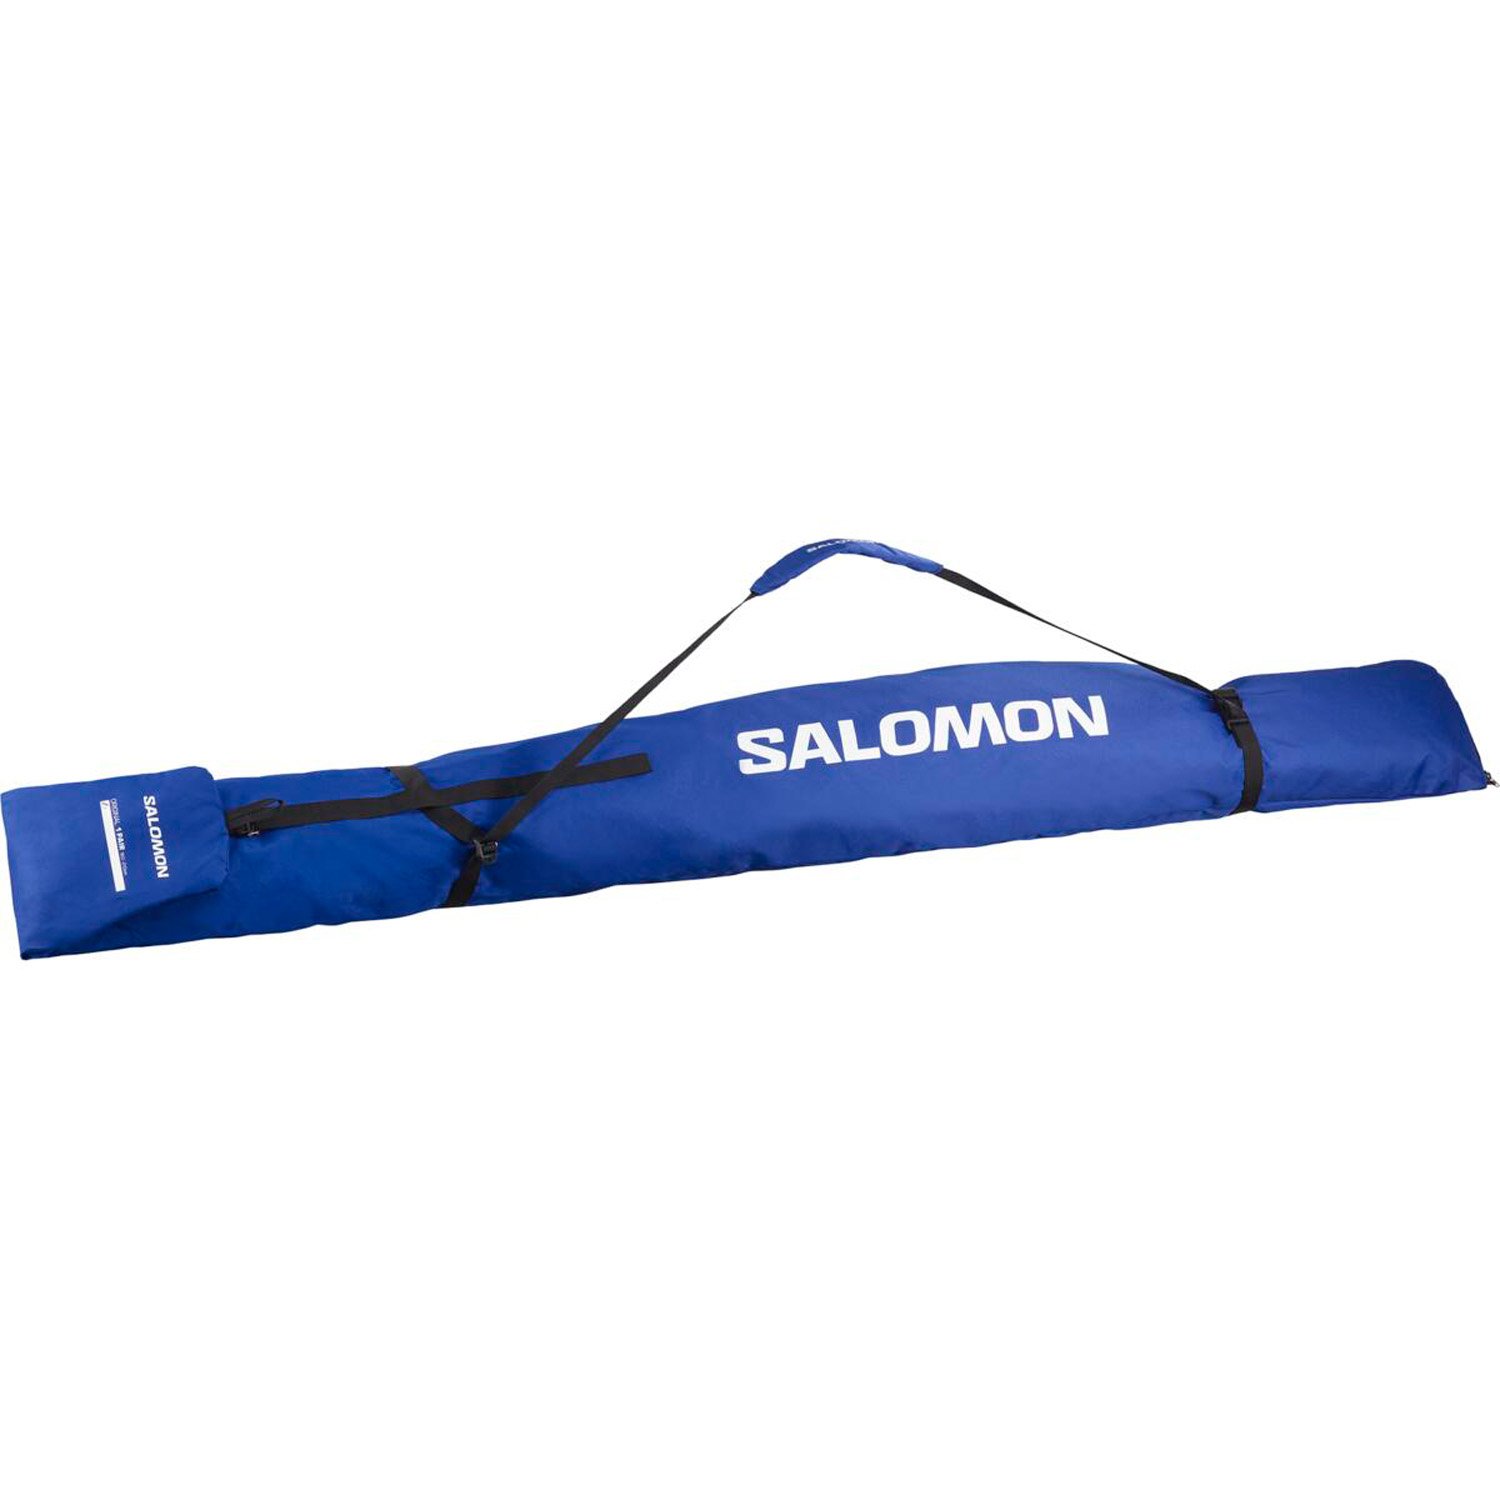 Salomon Original 160-210 Kayak Çantası - Renkli - 1